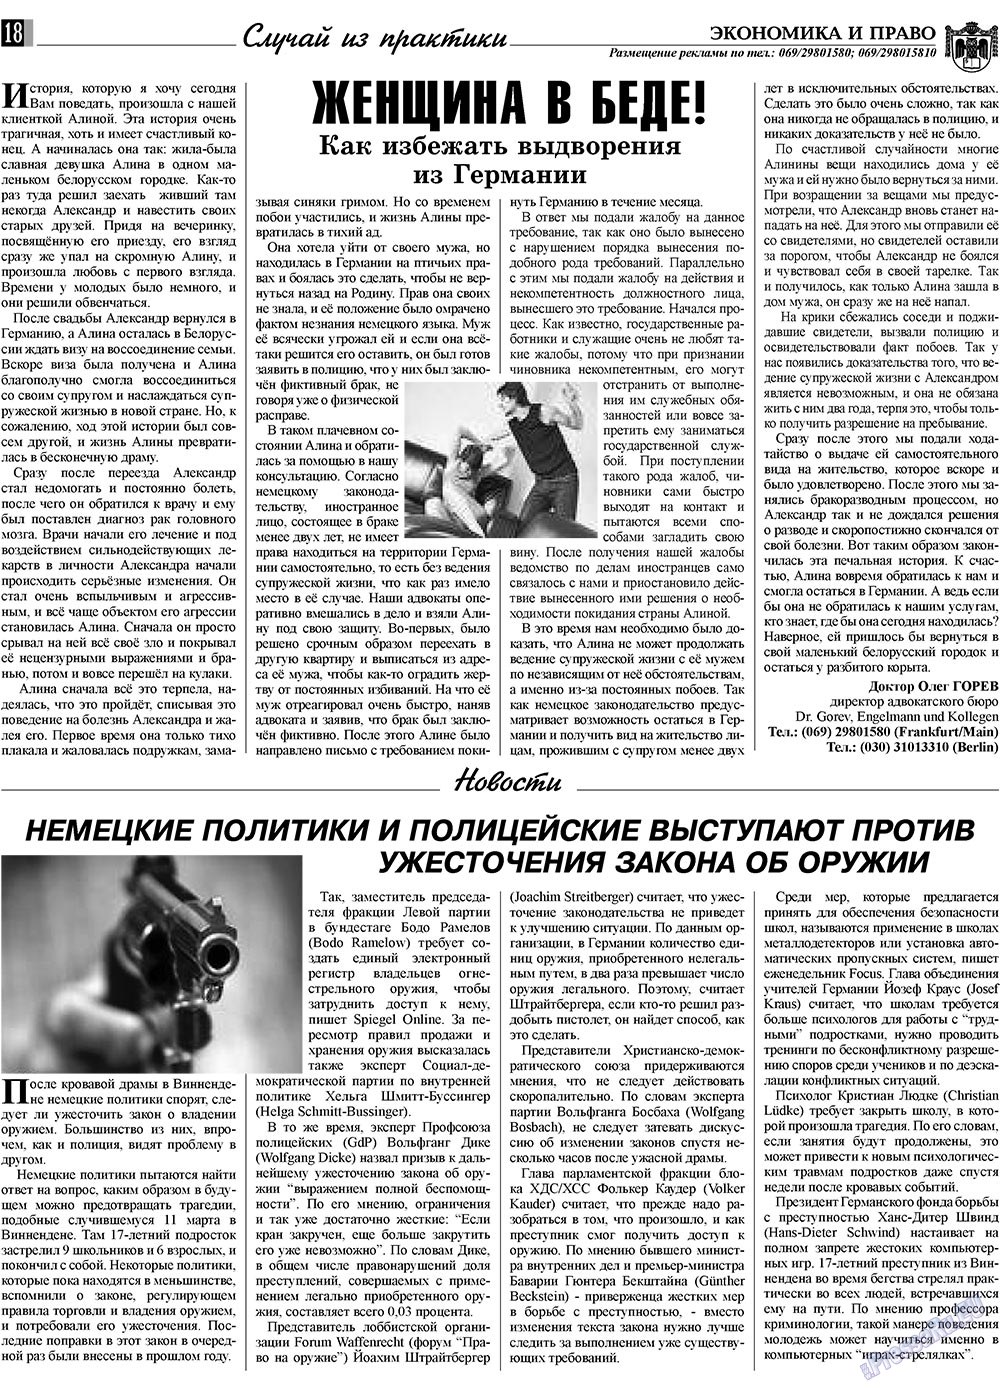 Экономика и право, газета. 2009 №4 стр.18